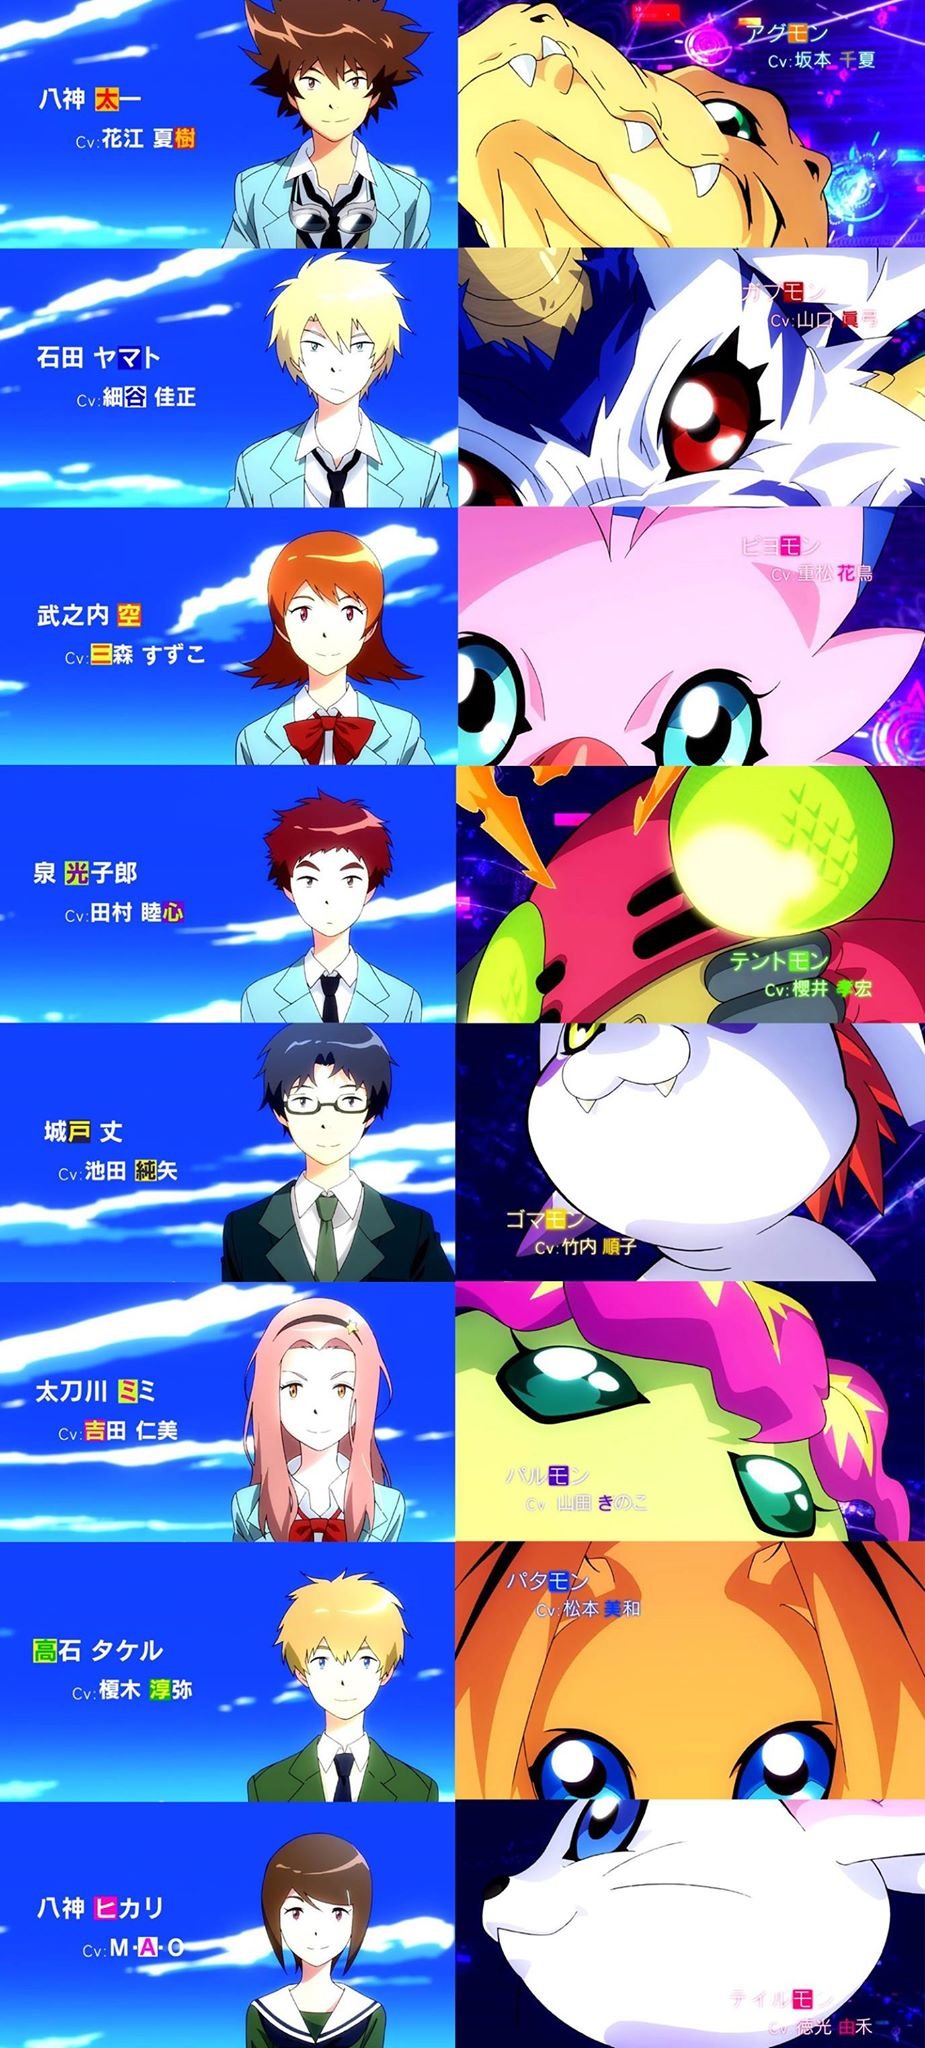 Digimon Adventure tri. - Segundo filme ganha imagem promocional! - AnimeNew